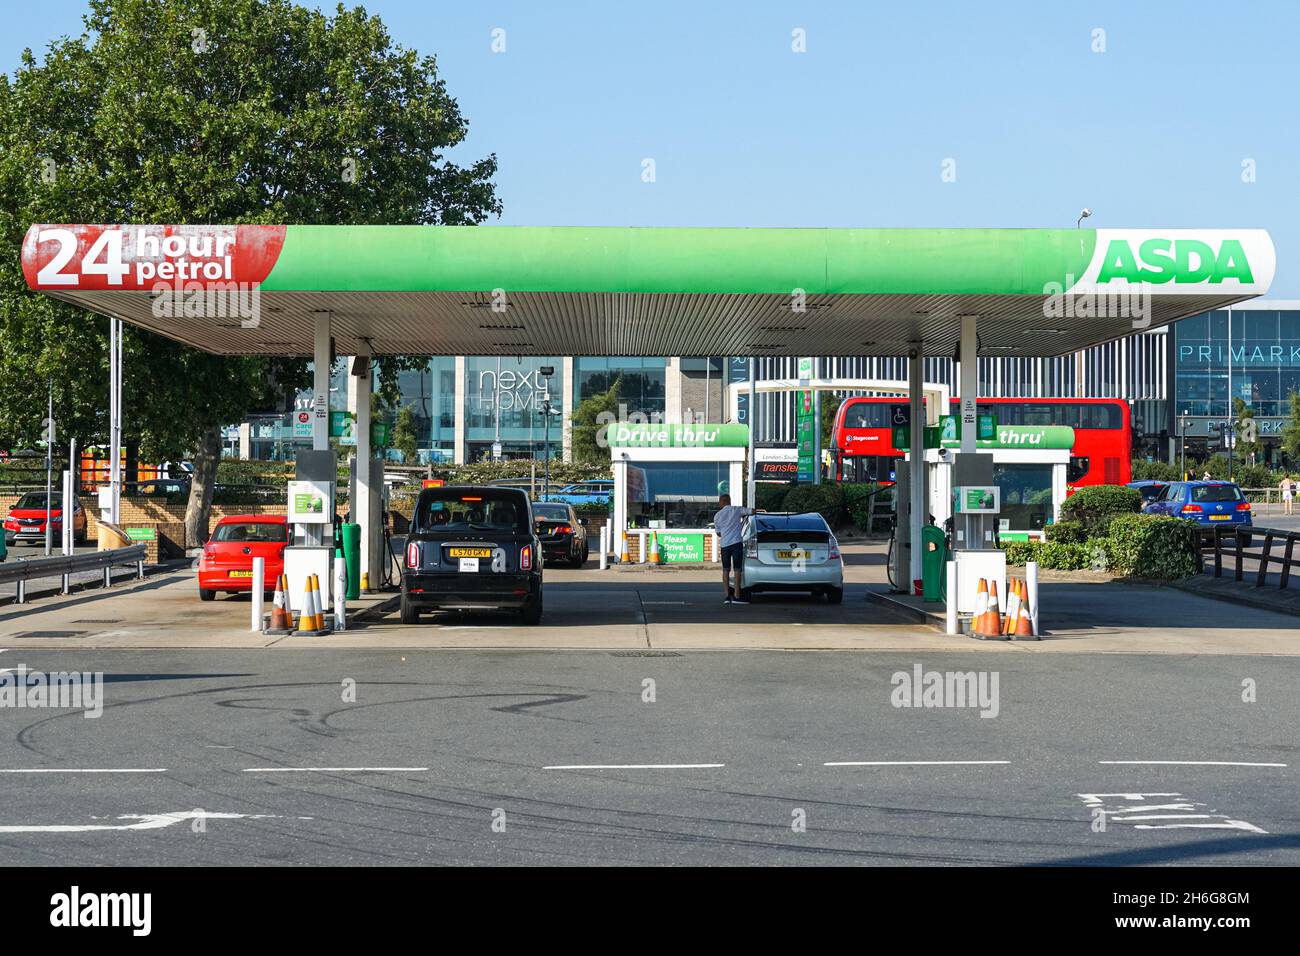 Asda petrol station forecourt in London, England, United Kingdom, UK Stock Photo